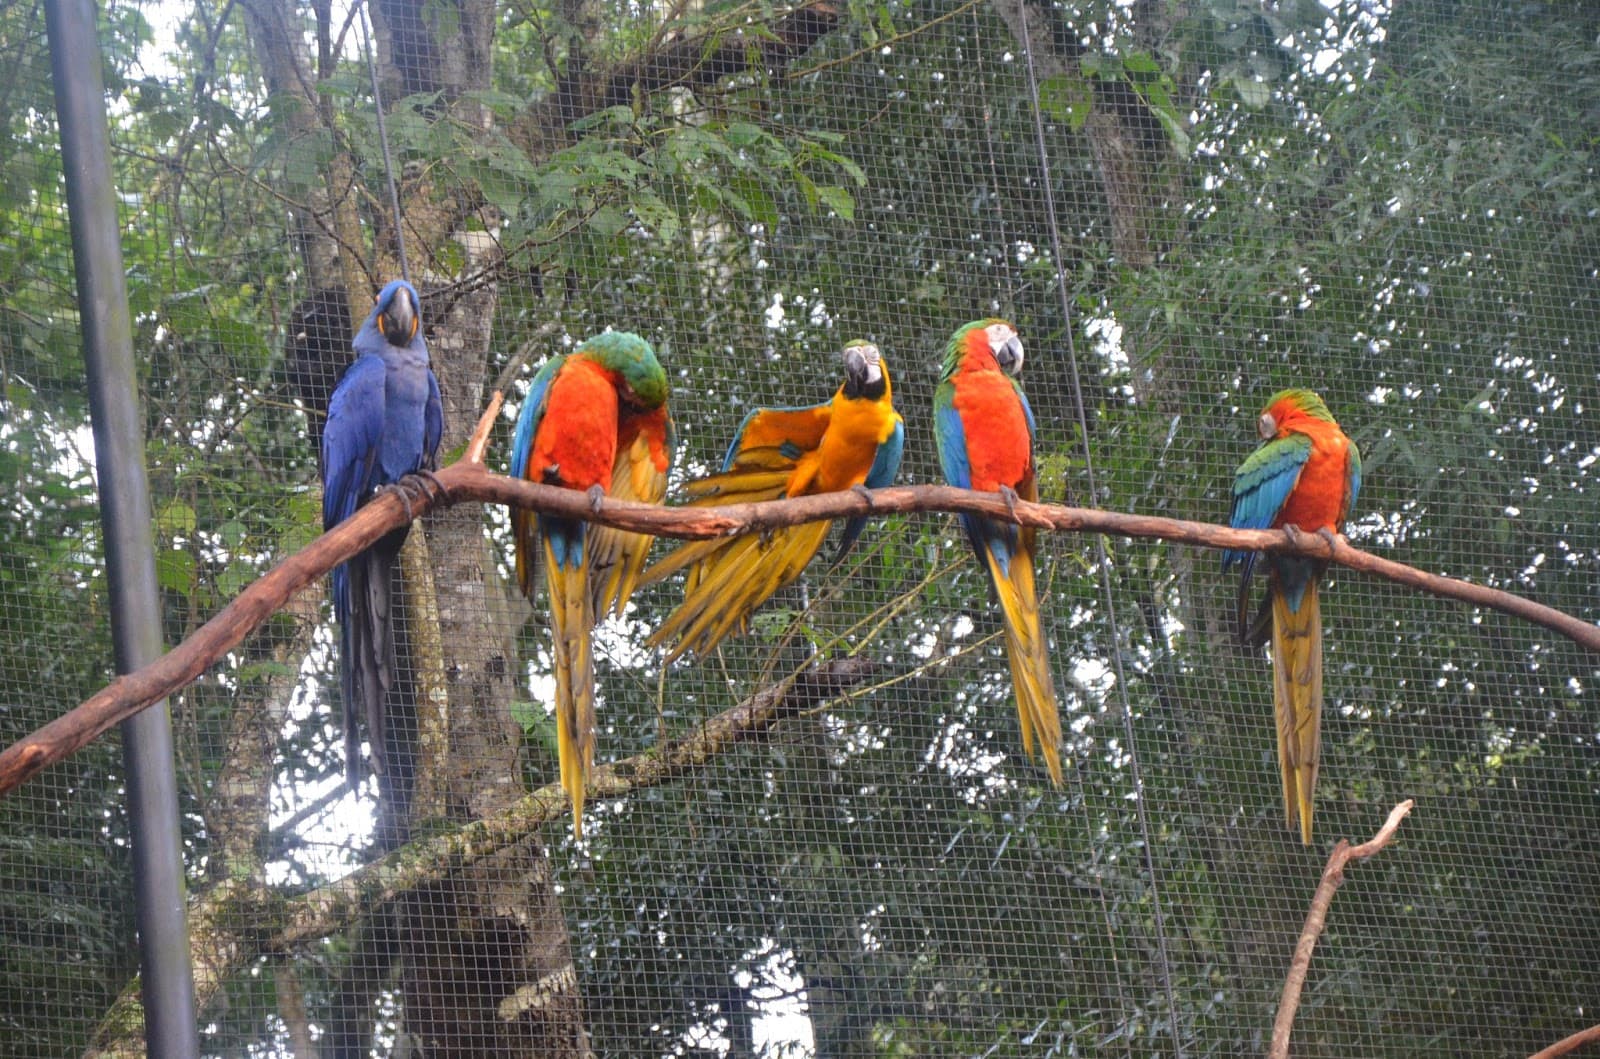 Parque das Aves in Foz do Iguaçu, Brazil